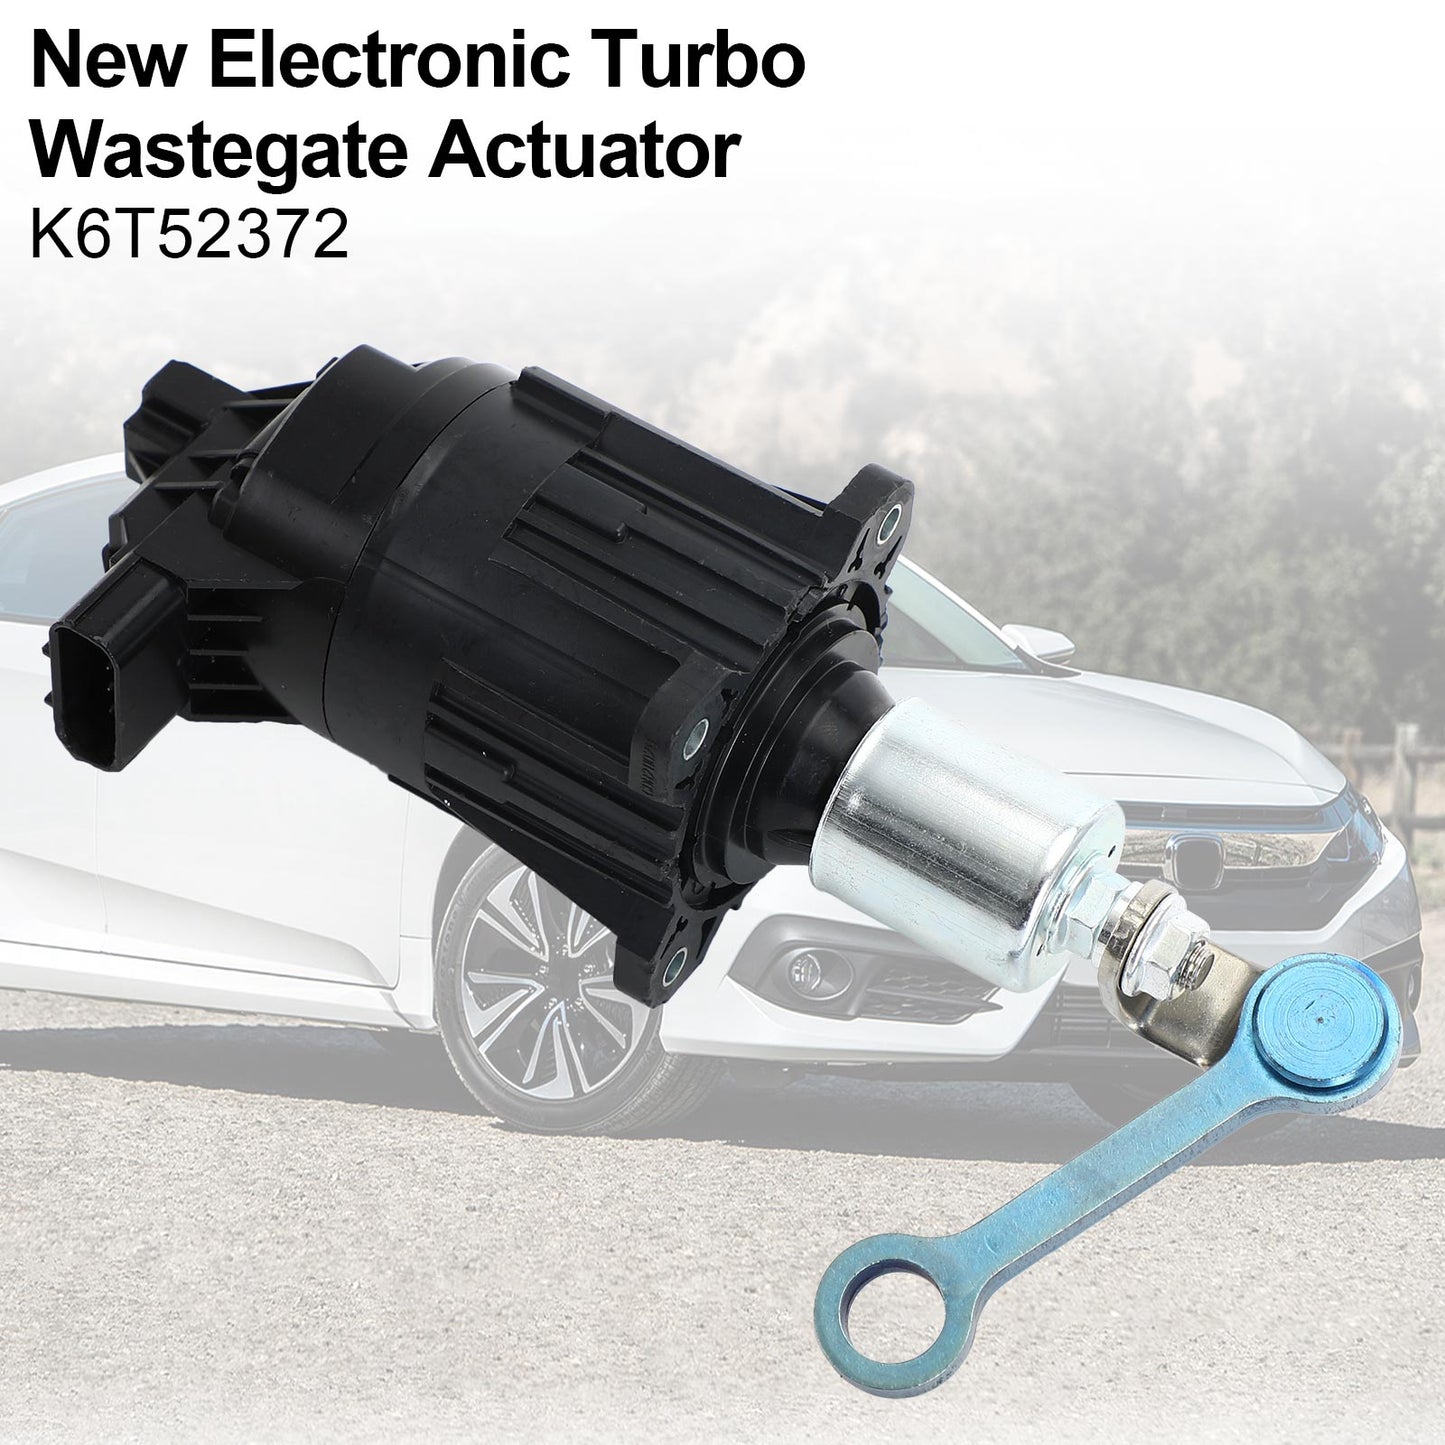 Actionneur électronique Turbo Wastegate pour Honda Civic 1.5L 2016-2019 K6T52372 CP générique